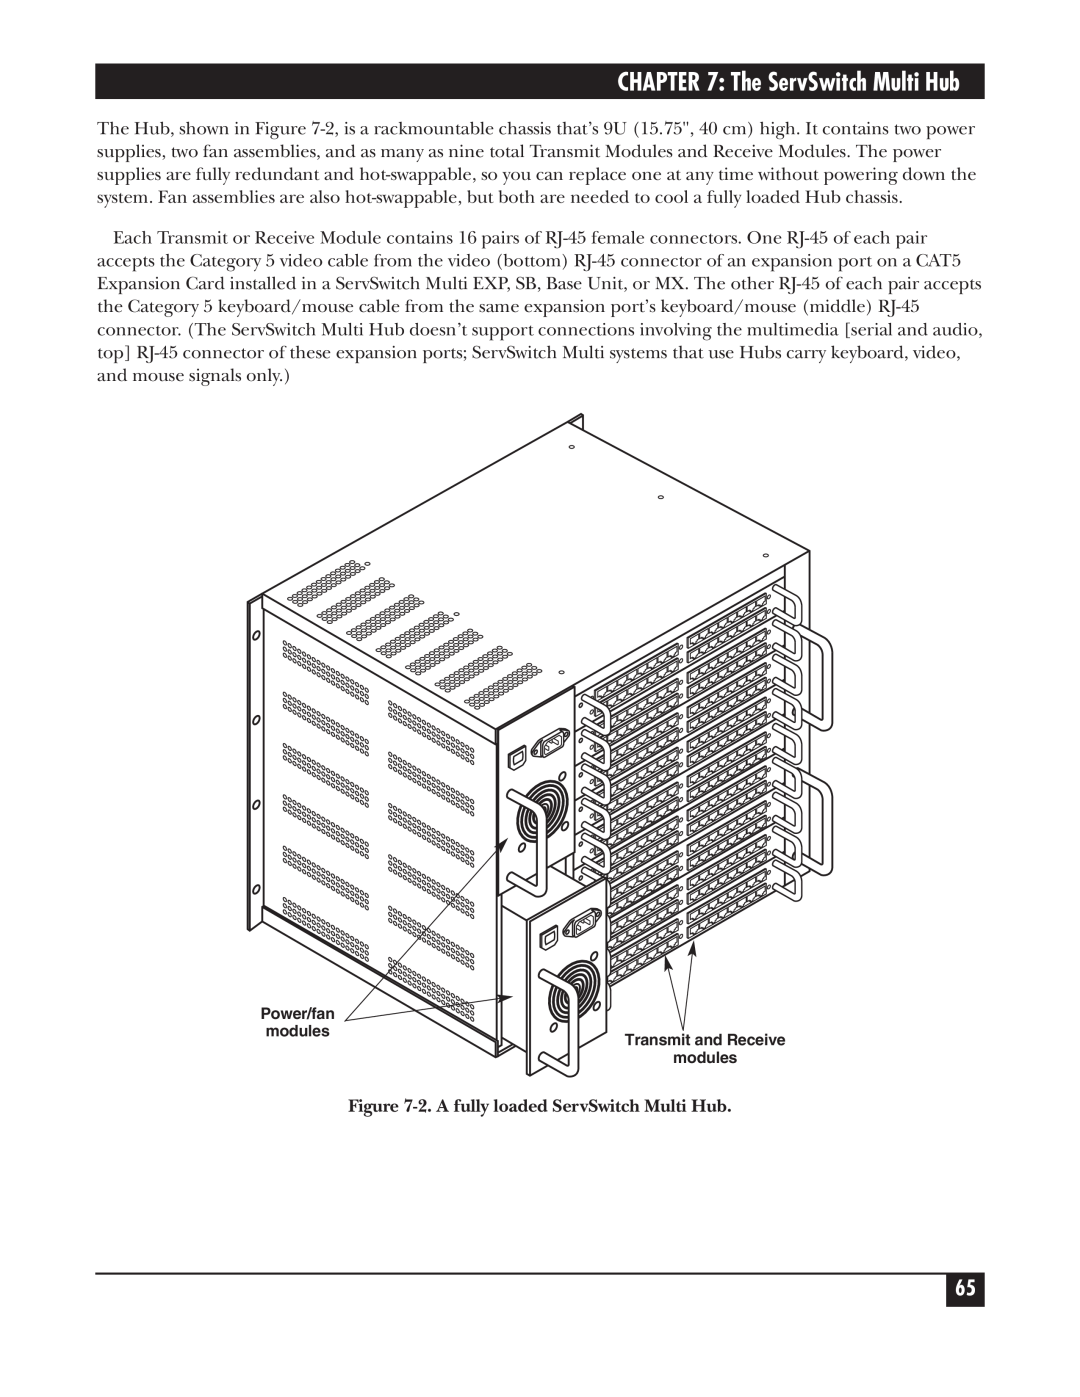 Black Box KV162A manual The ServSwitch Multi Hub, 2. A fully loaded ServSwitch Multi Hub 